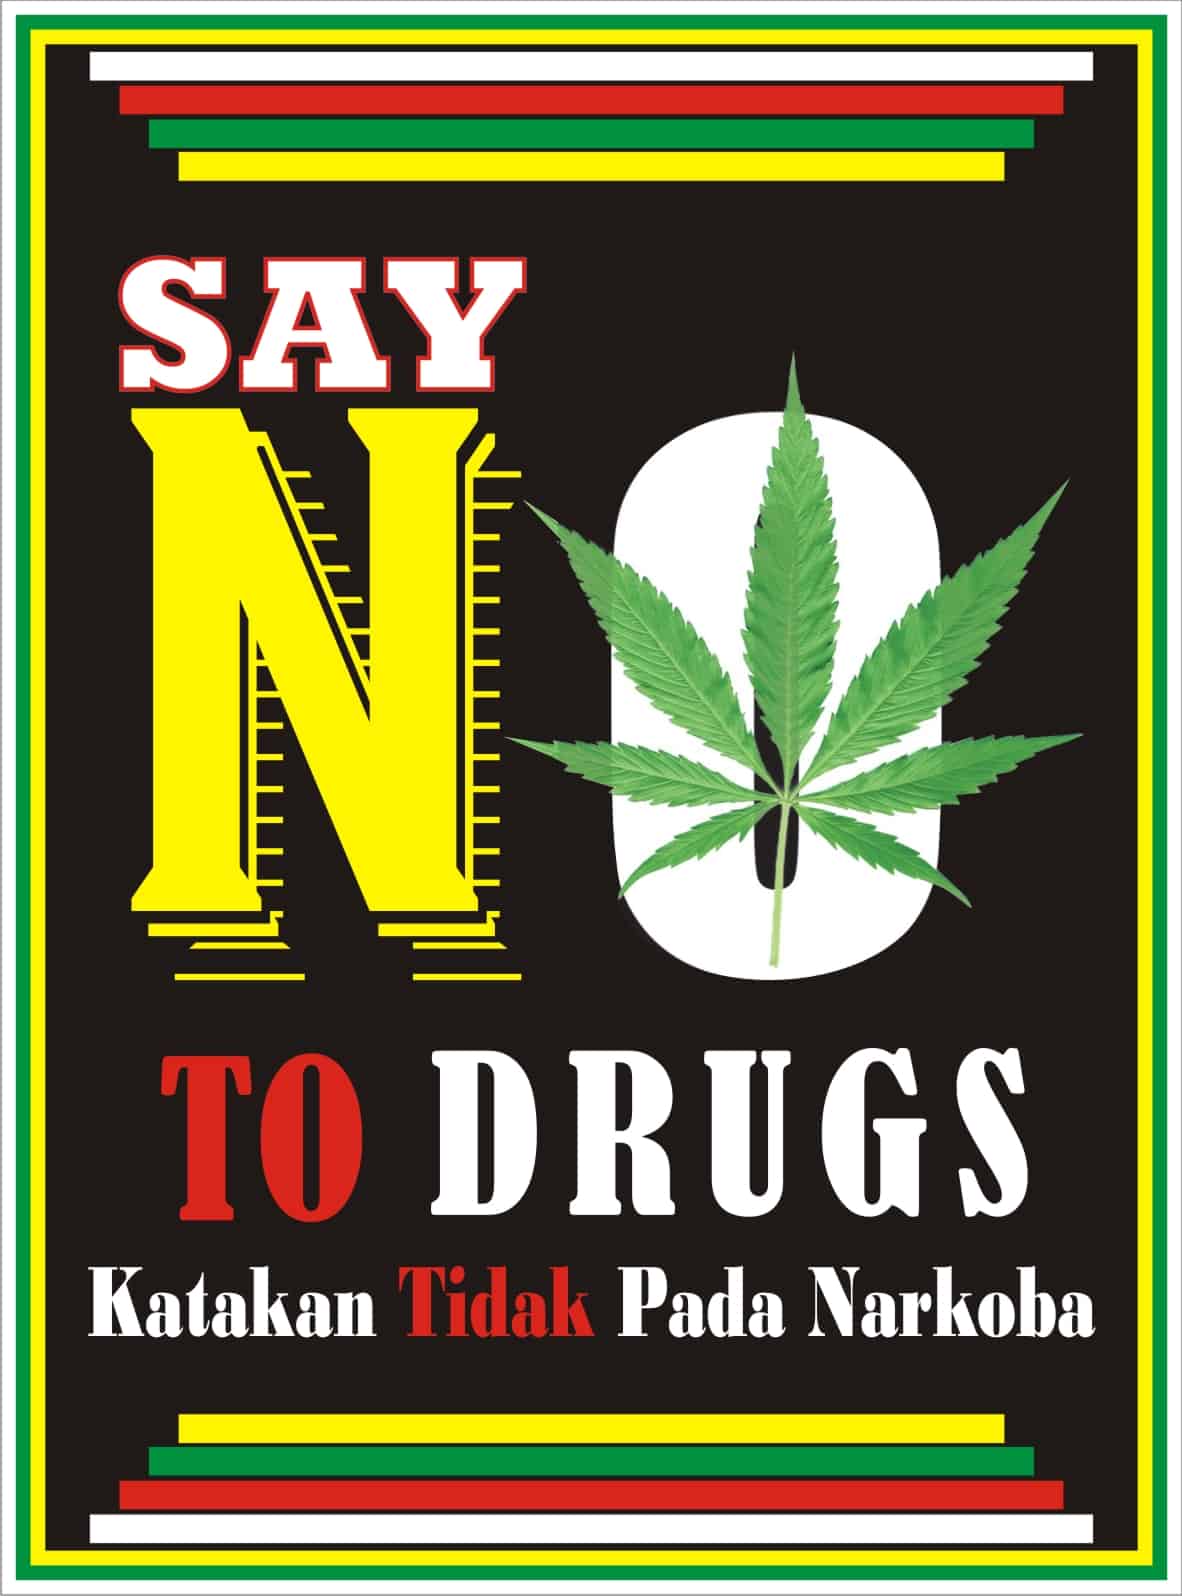 Contoh Poster Narkoba